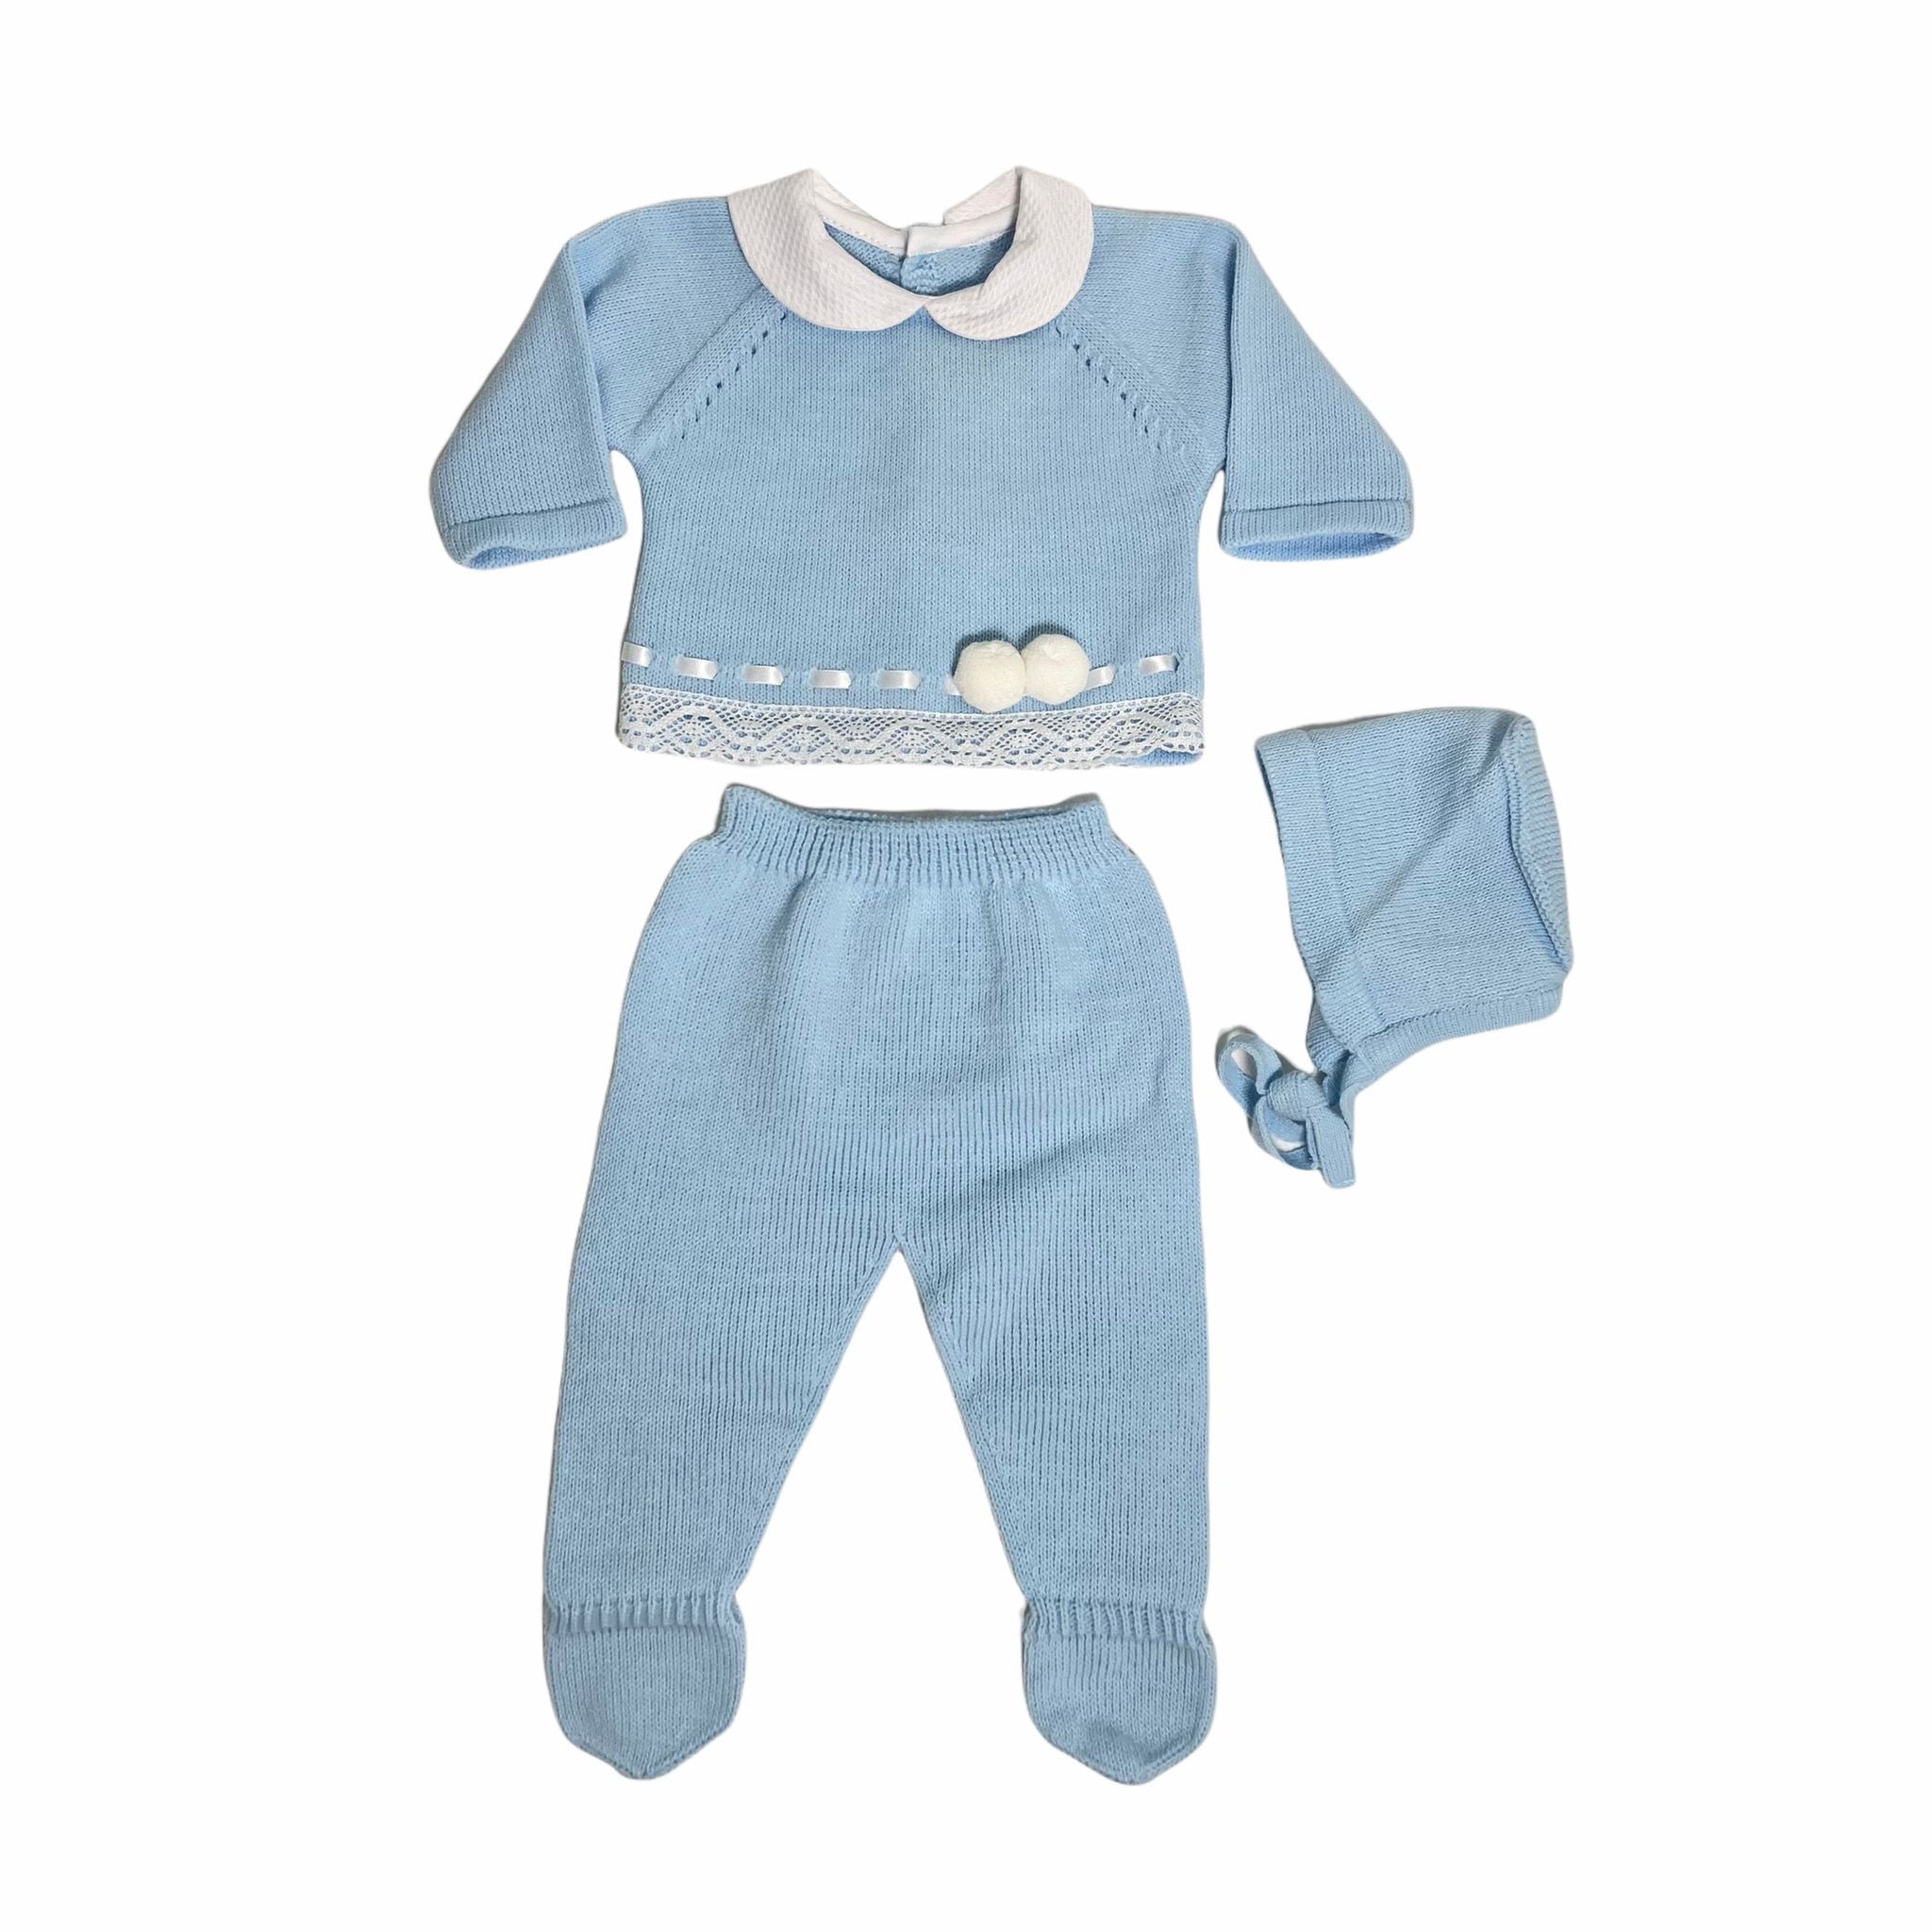 Tutina Spezzata 3 Pezzi In Caldo Cotone Acrilico Azzurra Neonato BABY FASHION 5206 - Baby Fashion - LuxuryKids